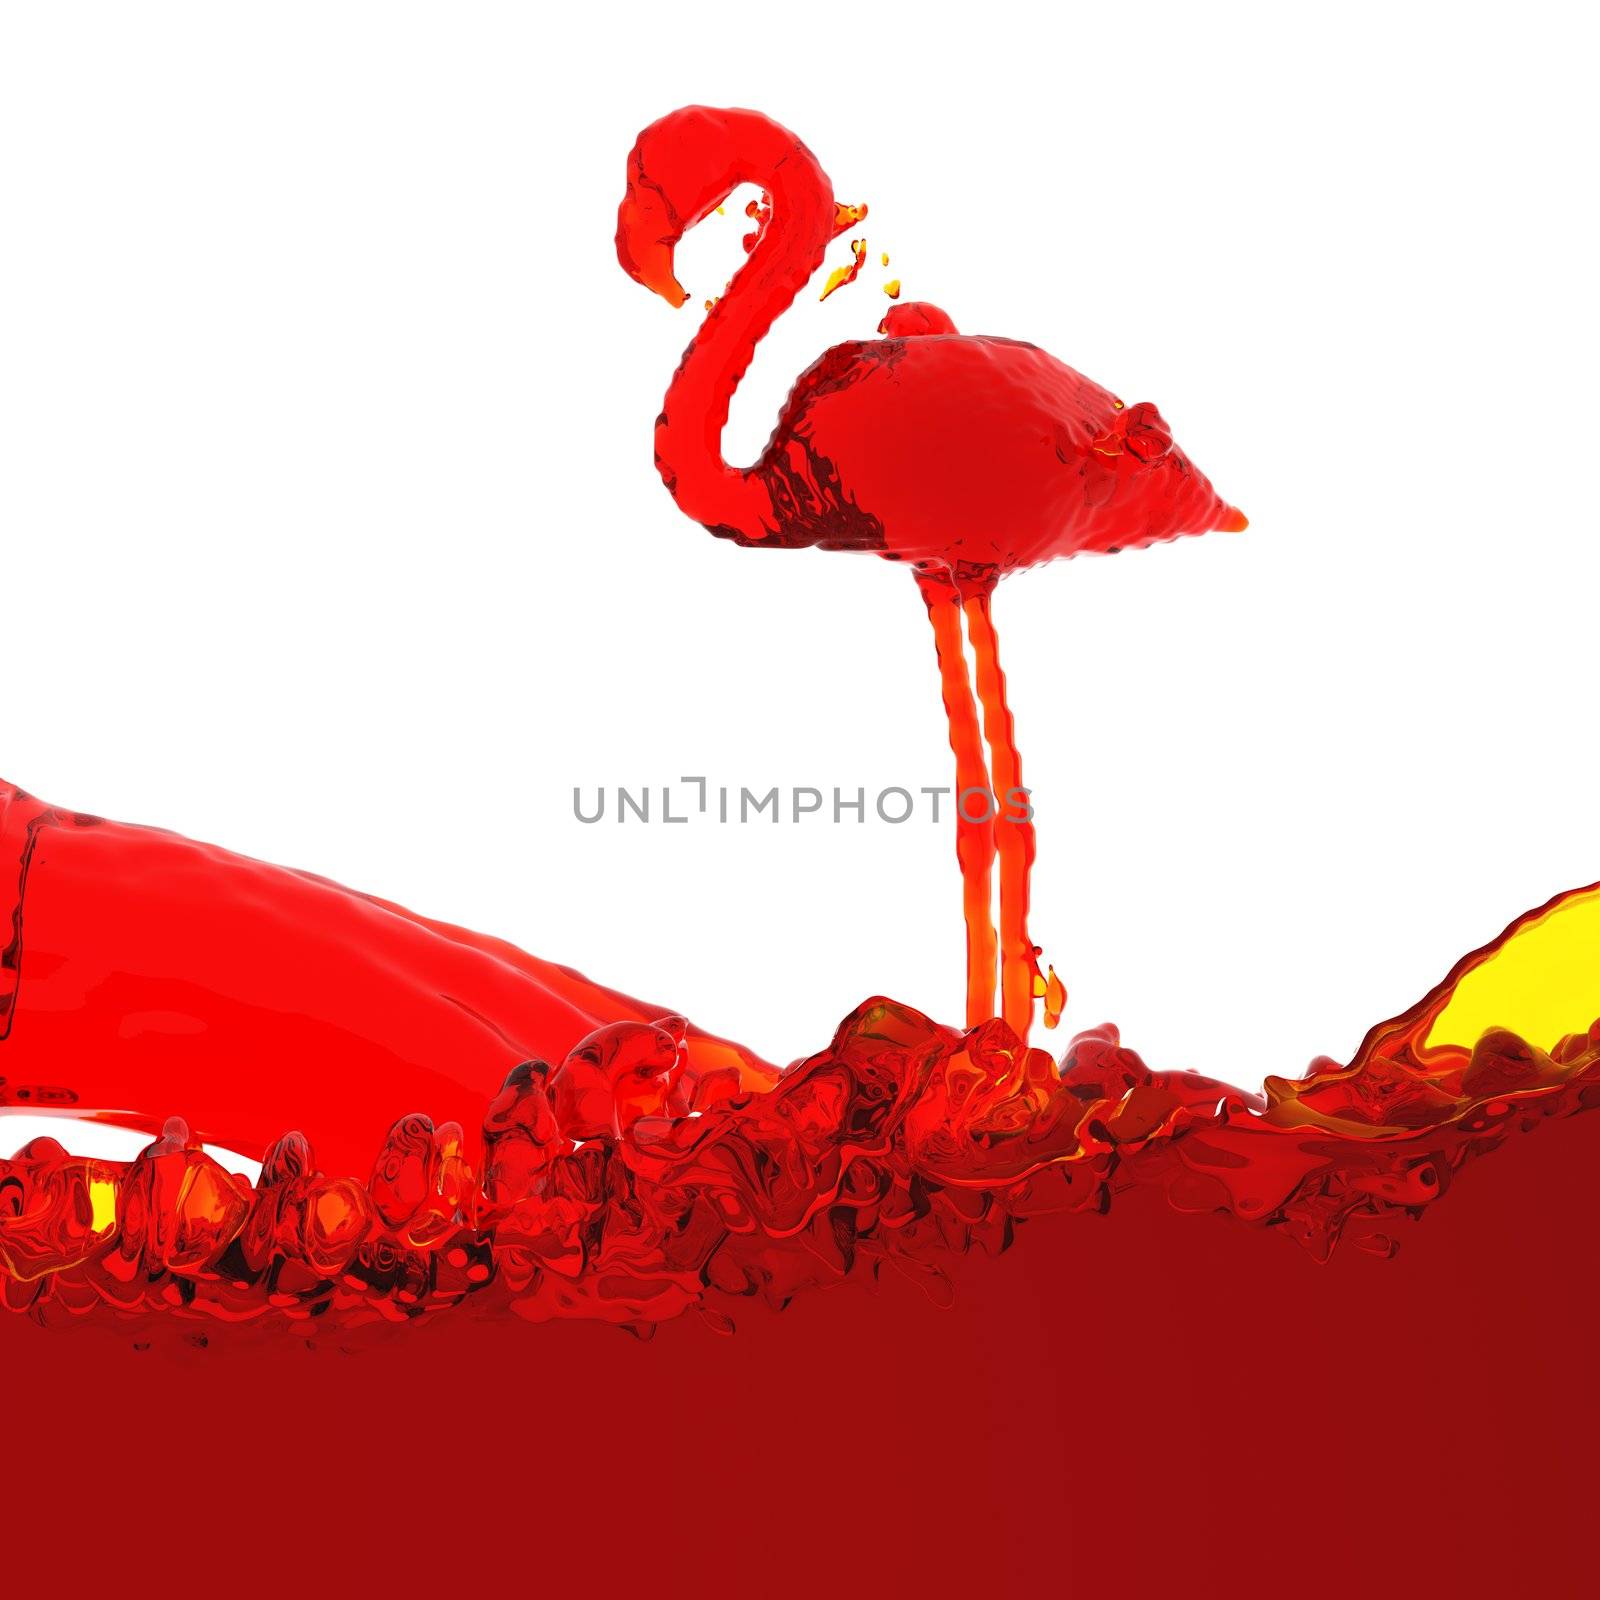 Flamingo of liquid made in 3D graphics